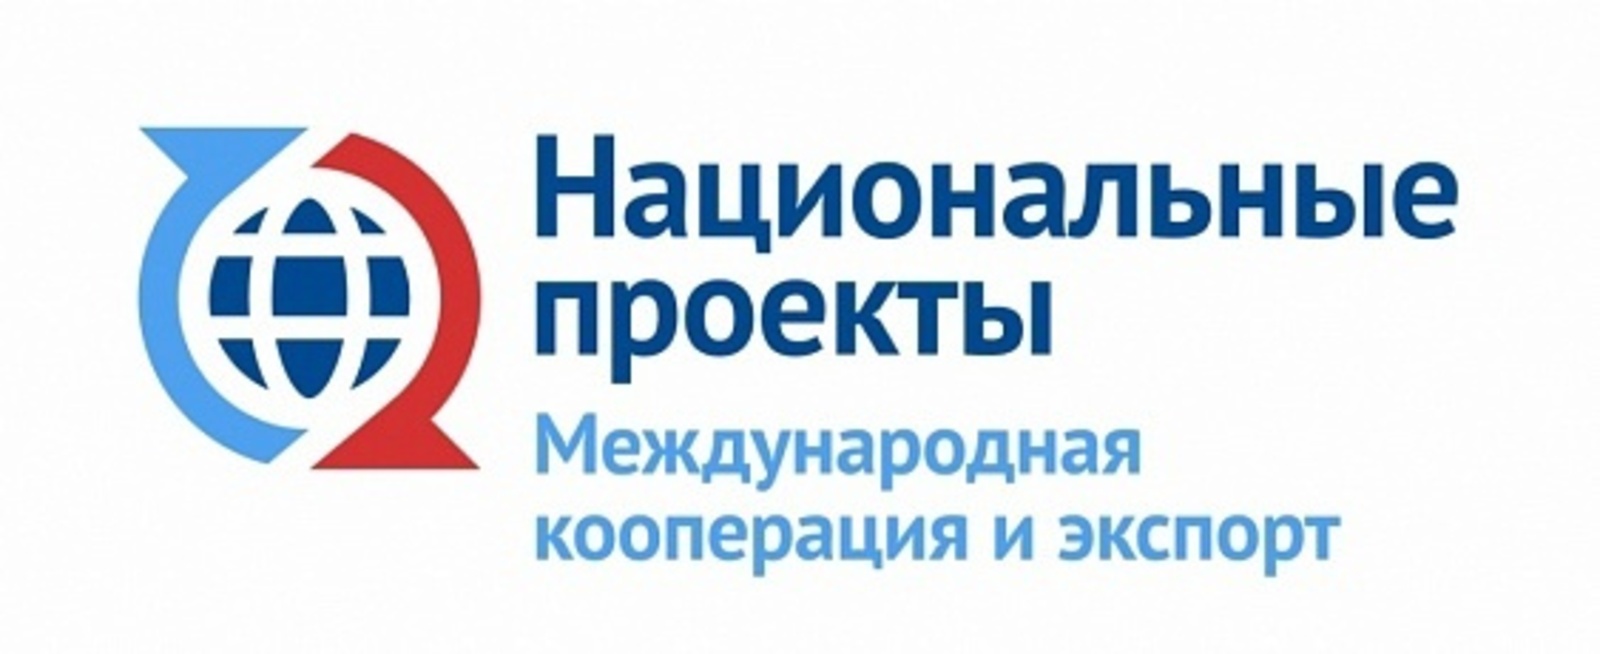 Башкортостан экспортировал 82 тысячи тонн зерна по железной дороге